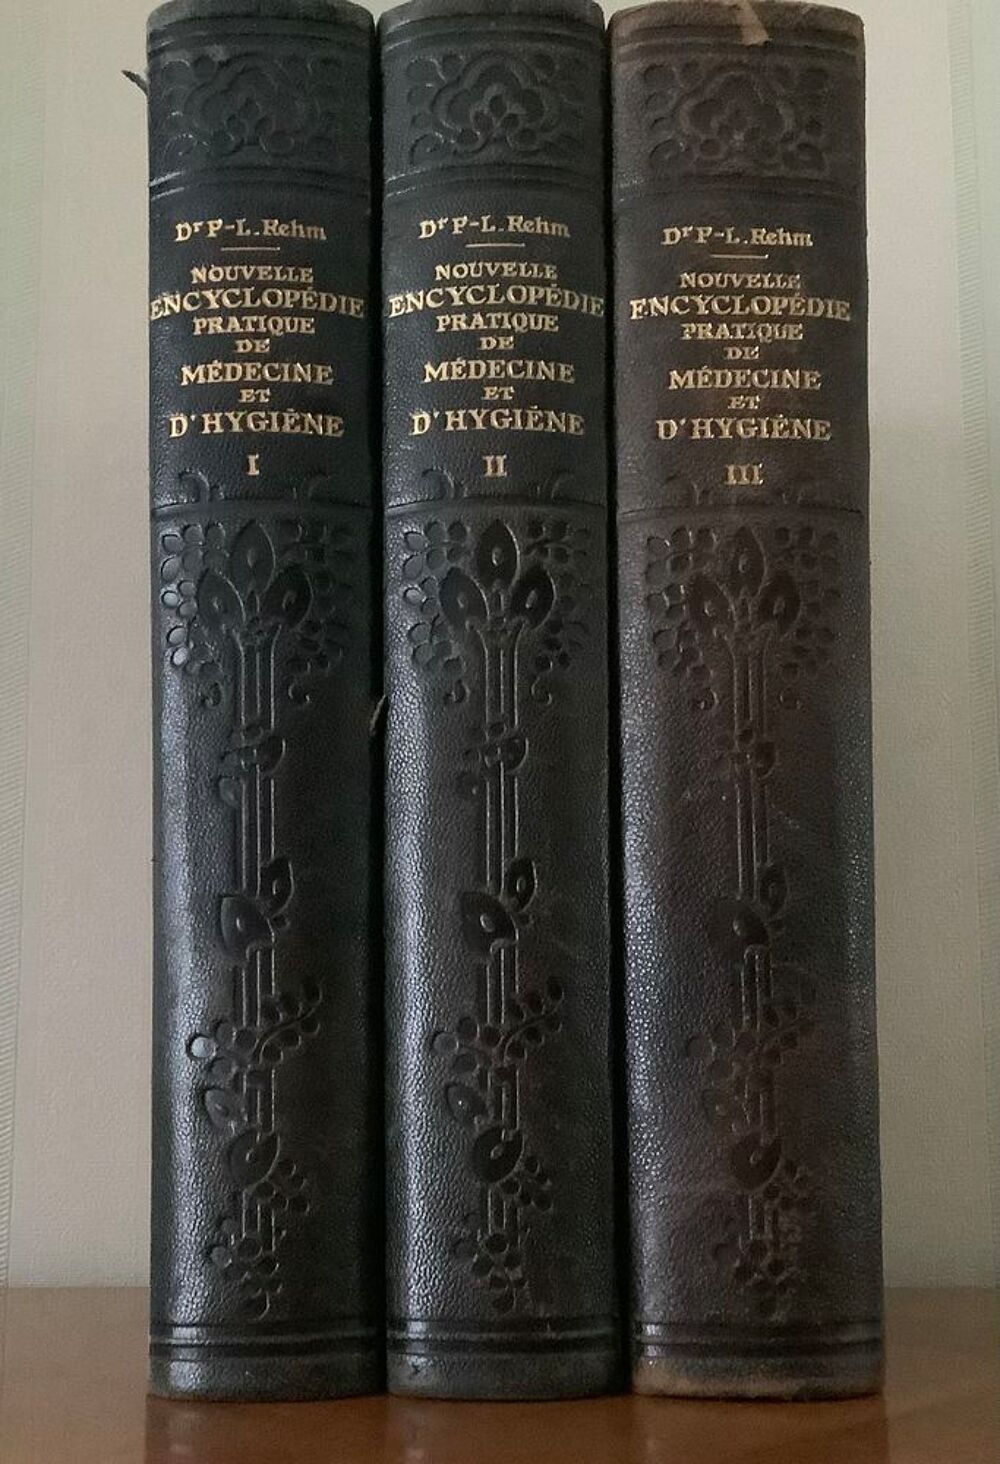 Encyclop&eacute;die de M&eacute;decine et d'Hygi&egrave;ne 1922 Livres et BD